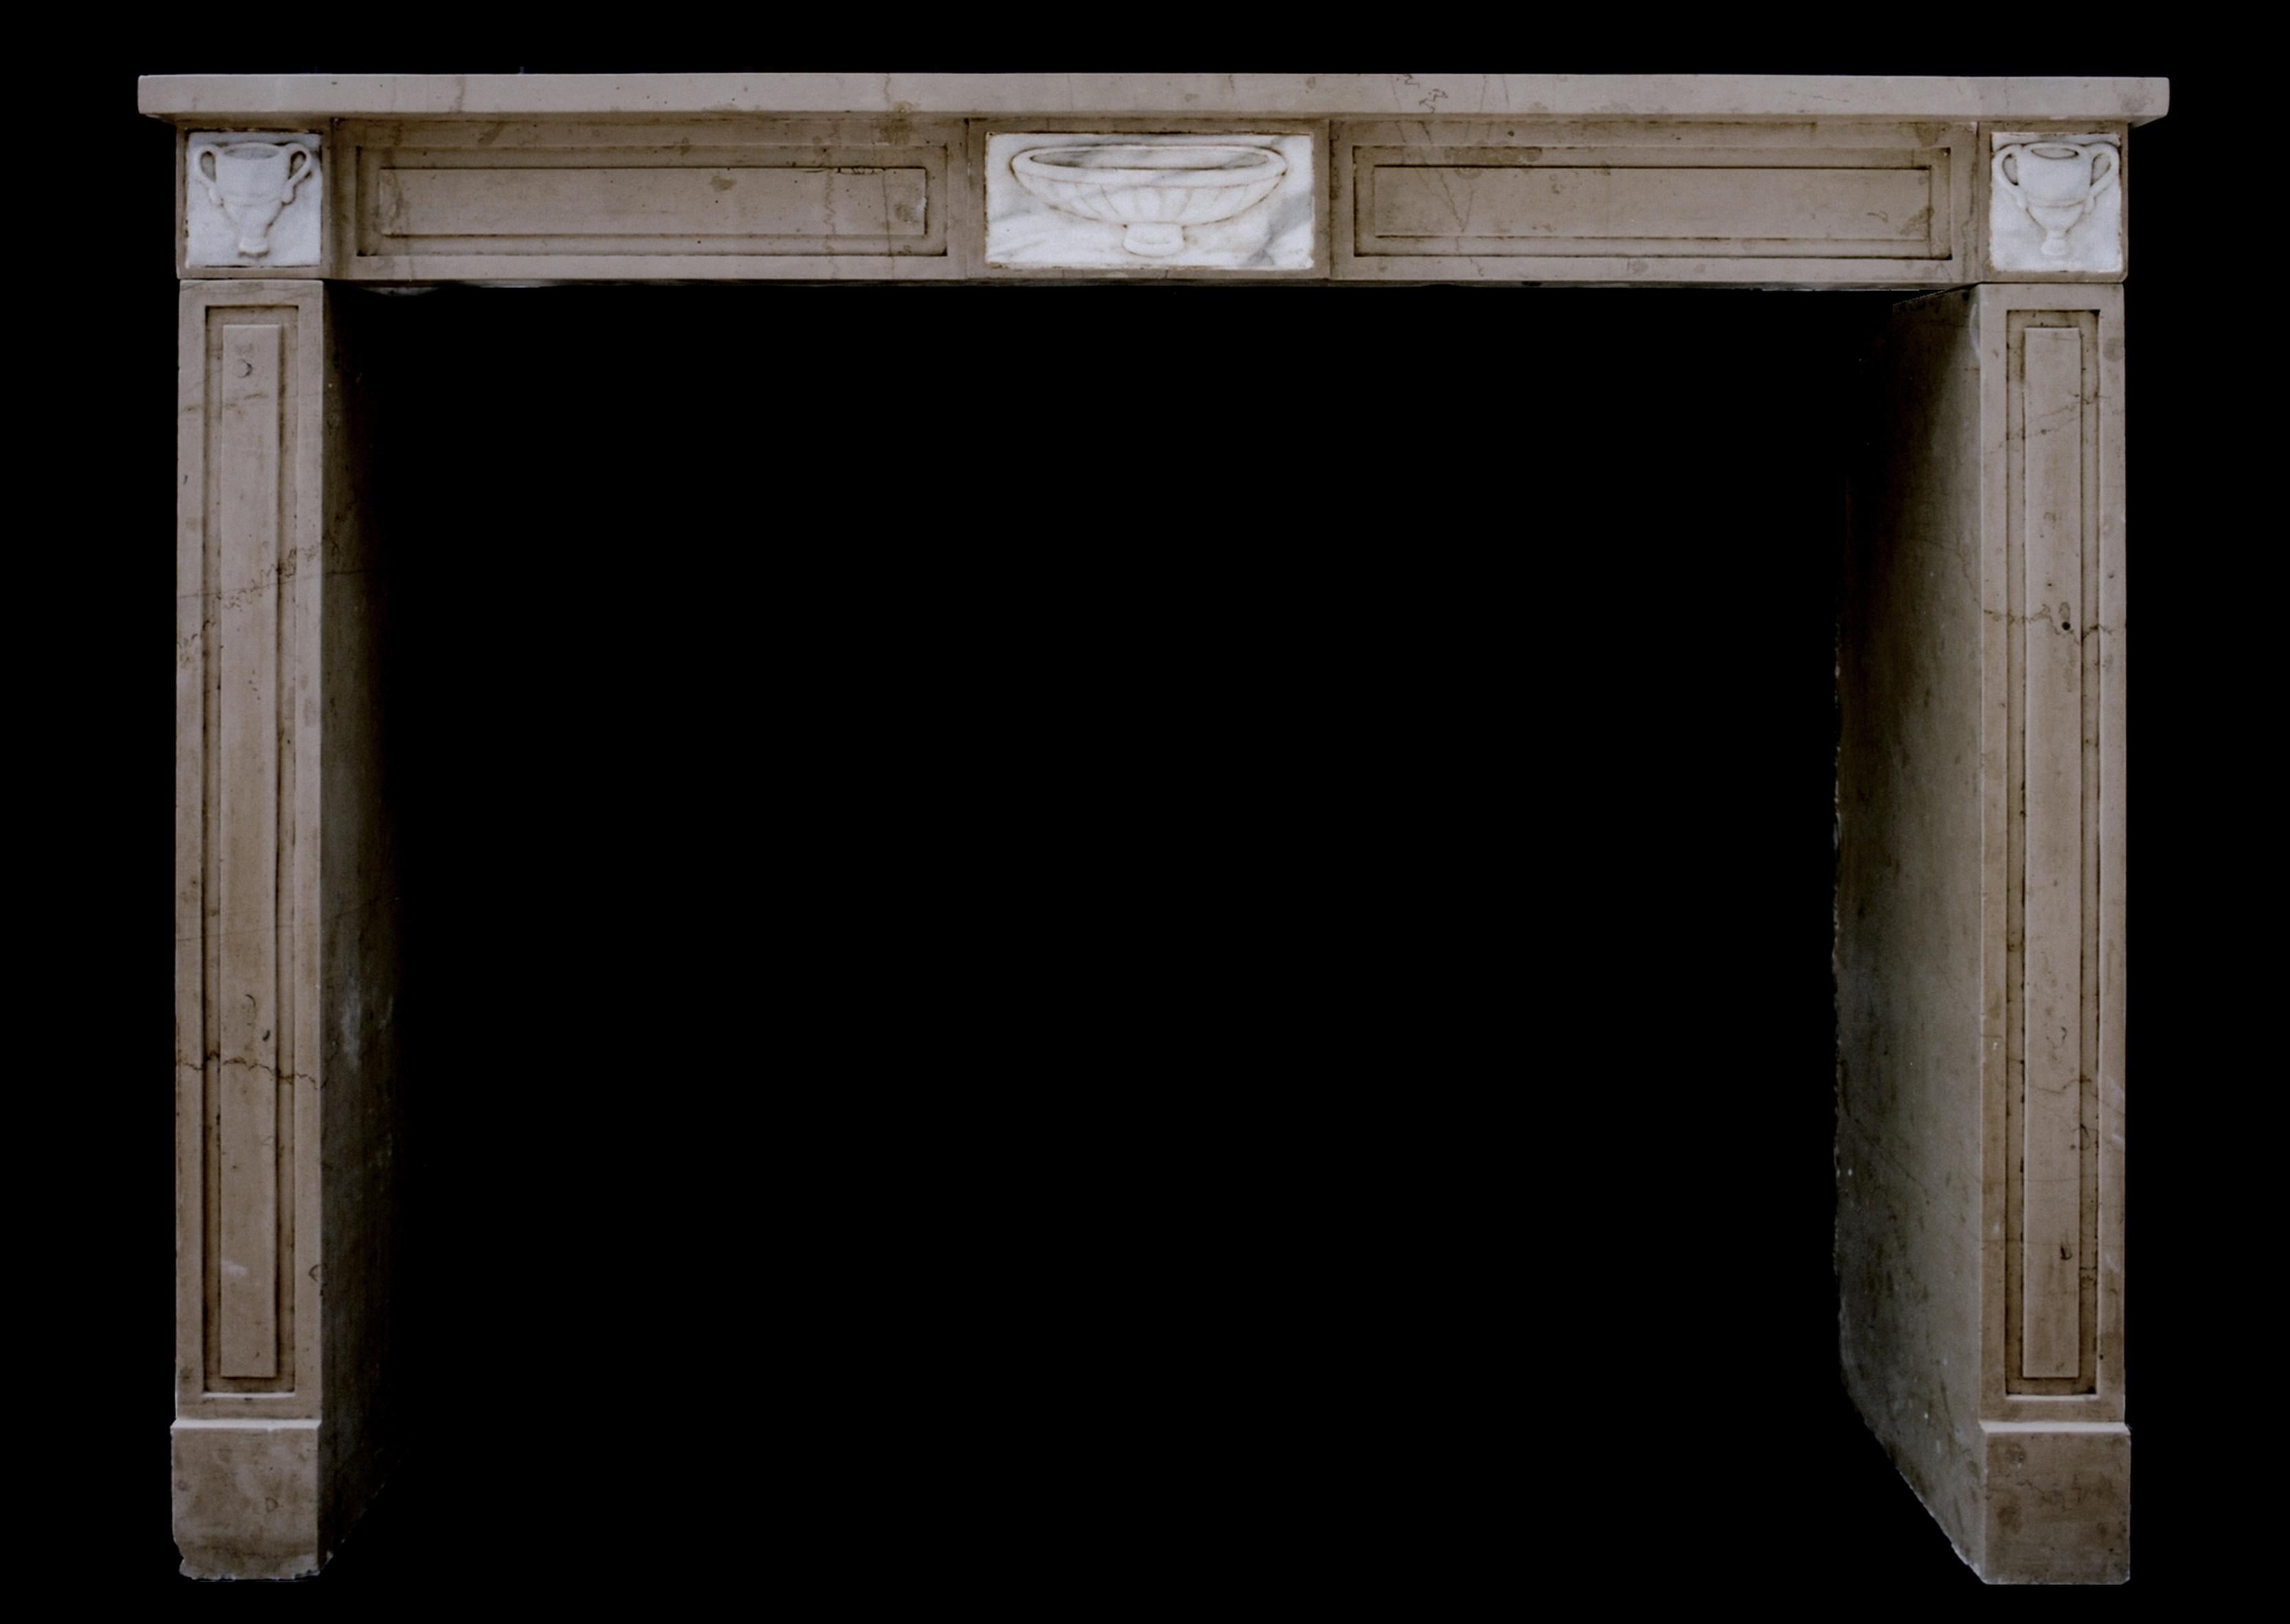 Une cheminée française de style Louis XVI en pierre de Bourgogne avec des blocs centraux et latéraux sculptés en marbre blanc.

Mesures : 
Largeur de l'étagère :	1355 mm      	53 3/8 in
Hauteur totale :	1030 mm      	40 1/2 po
Hauteur d'ouverture